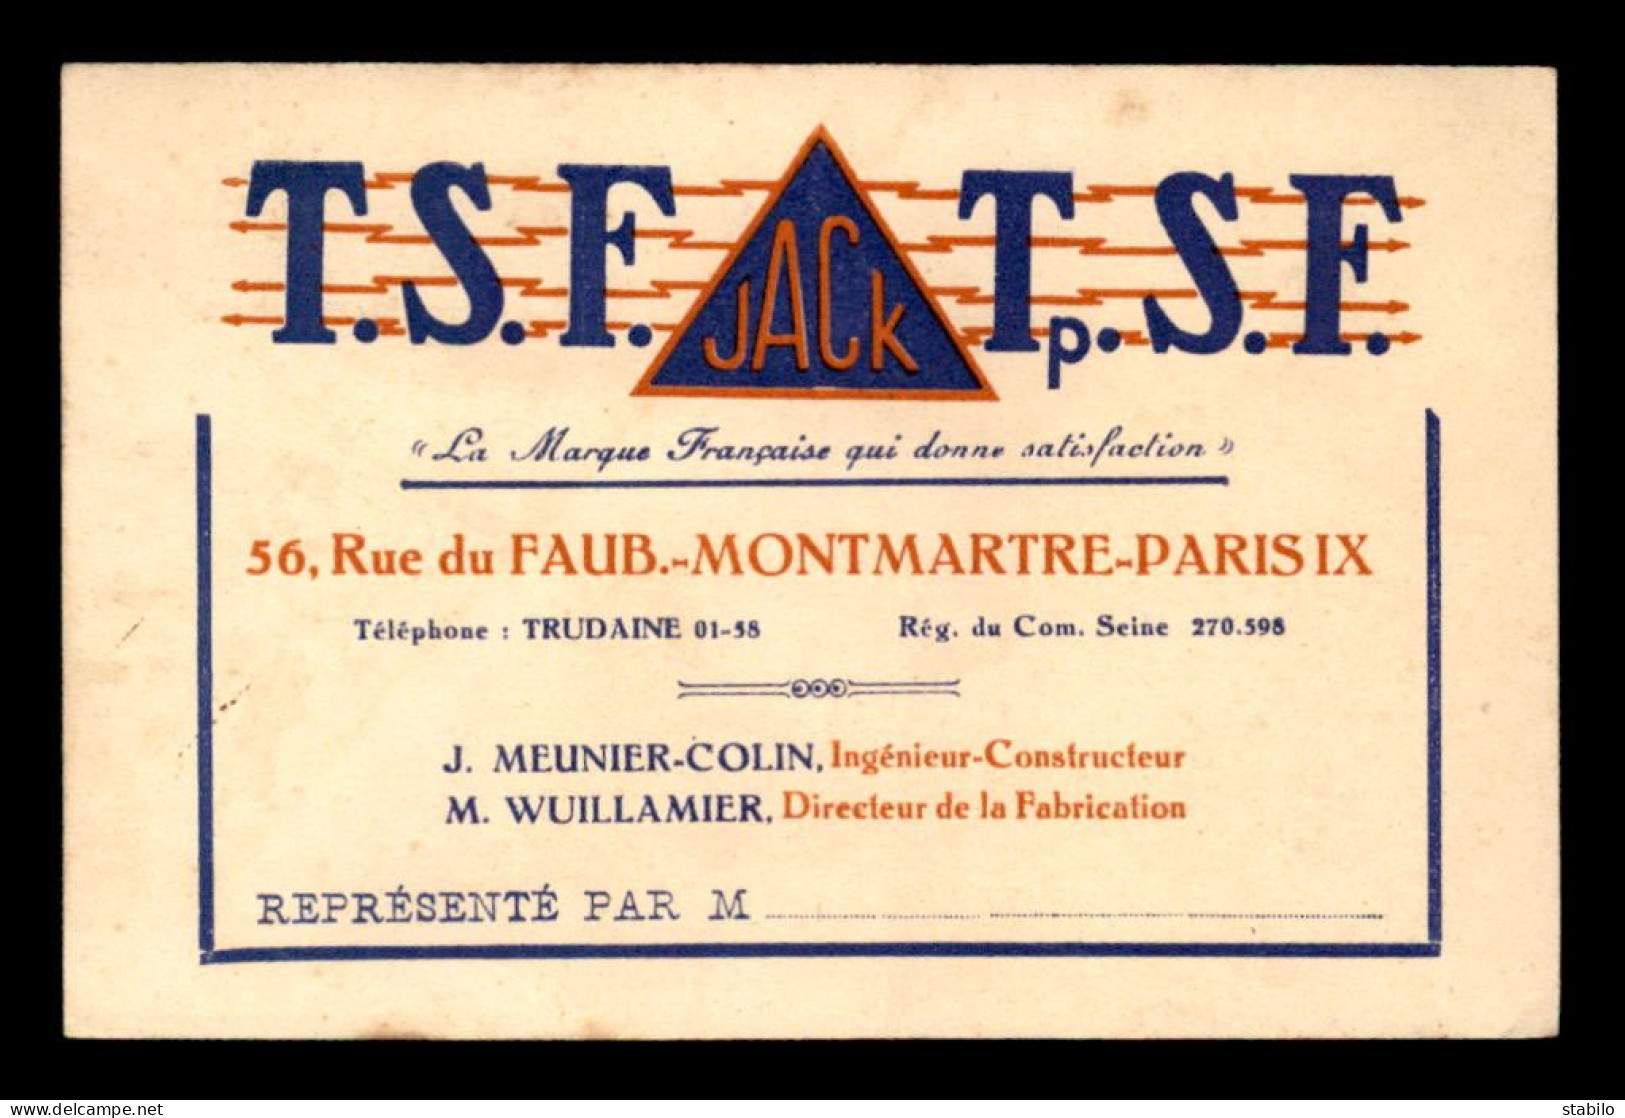 CARTE DE VISITE - T.S.F. JACK, 56 RUE DU FG MONTMARTRE PARIS 9EME - FORMAT 12 X 7.8 CM - Cartes De Visite